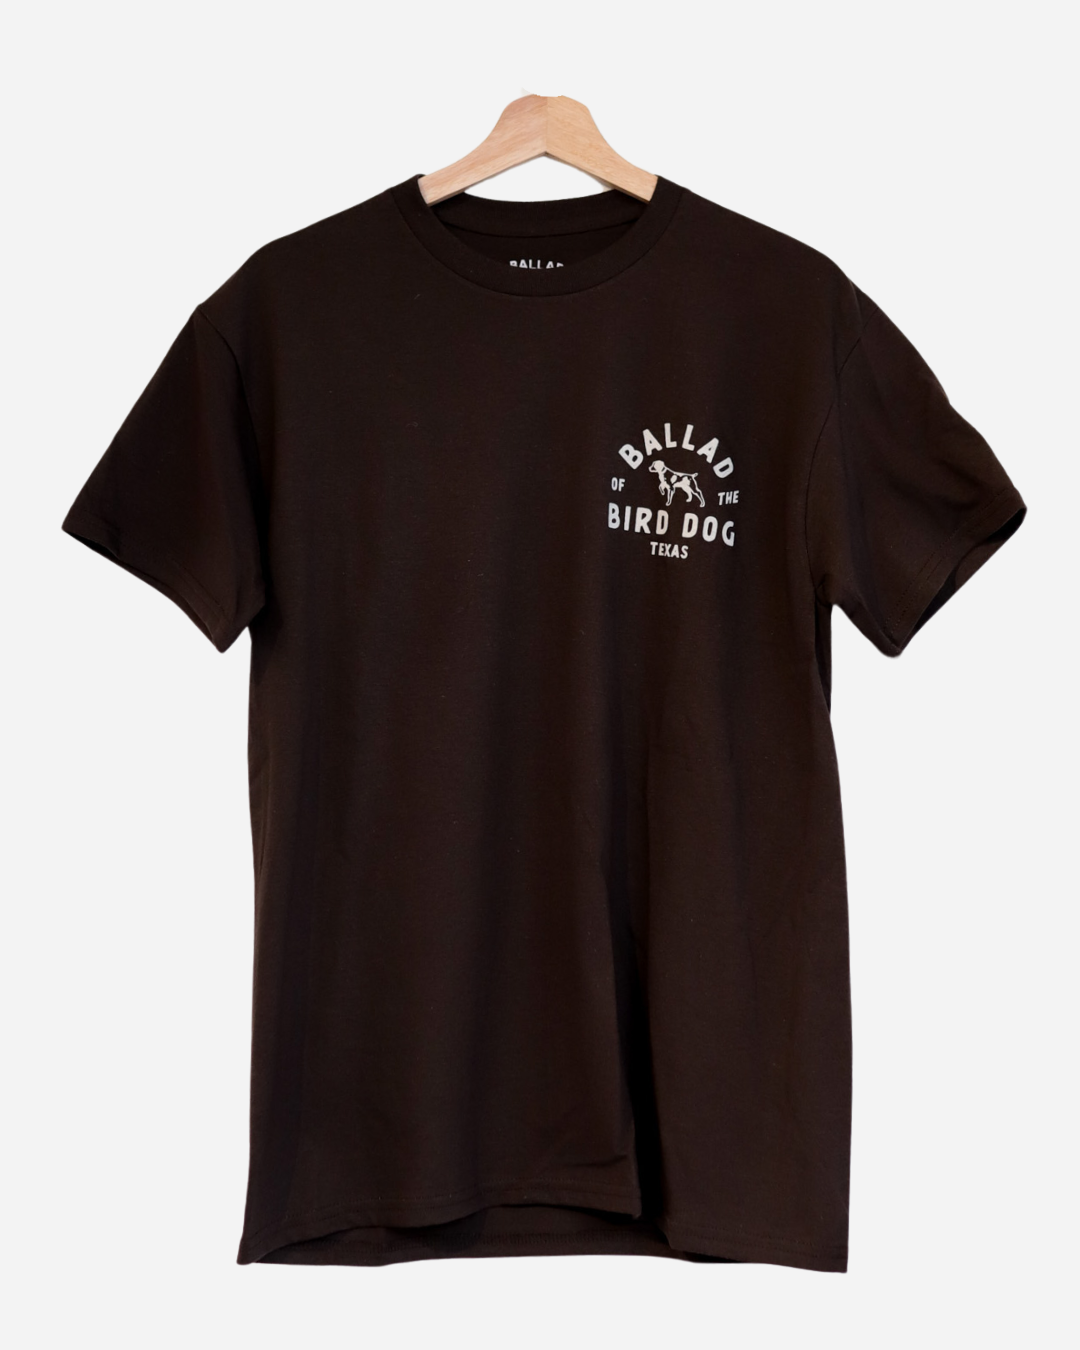 Shop Shirt | Whoa Ballad Of The Bird Dog - Apparel Tees